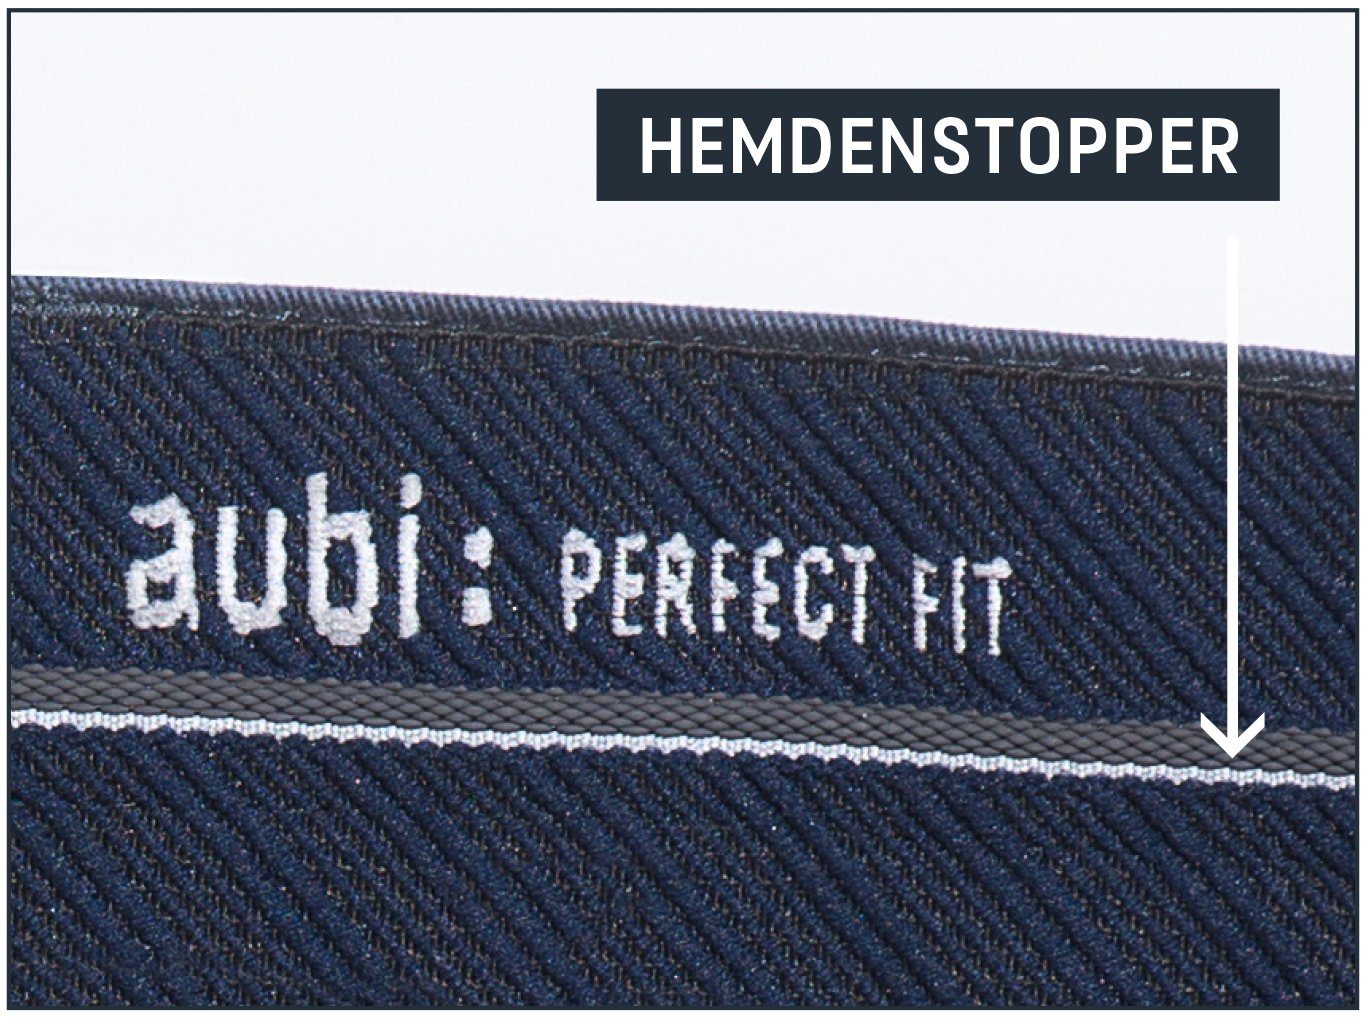 Herren Fit Modell Perfect aus aubi: aubi High Stretch Hose Jeans 526 (56) Baumwolle Sommer Bequeme grey Jeans Flex